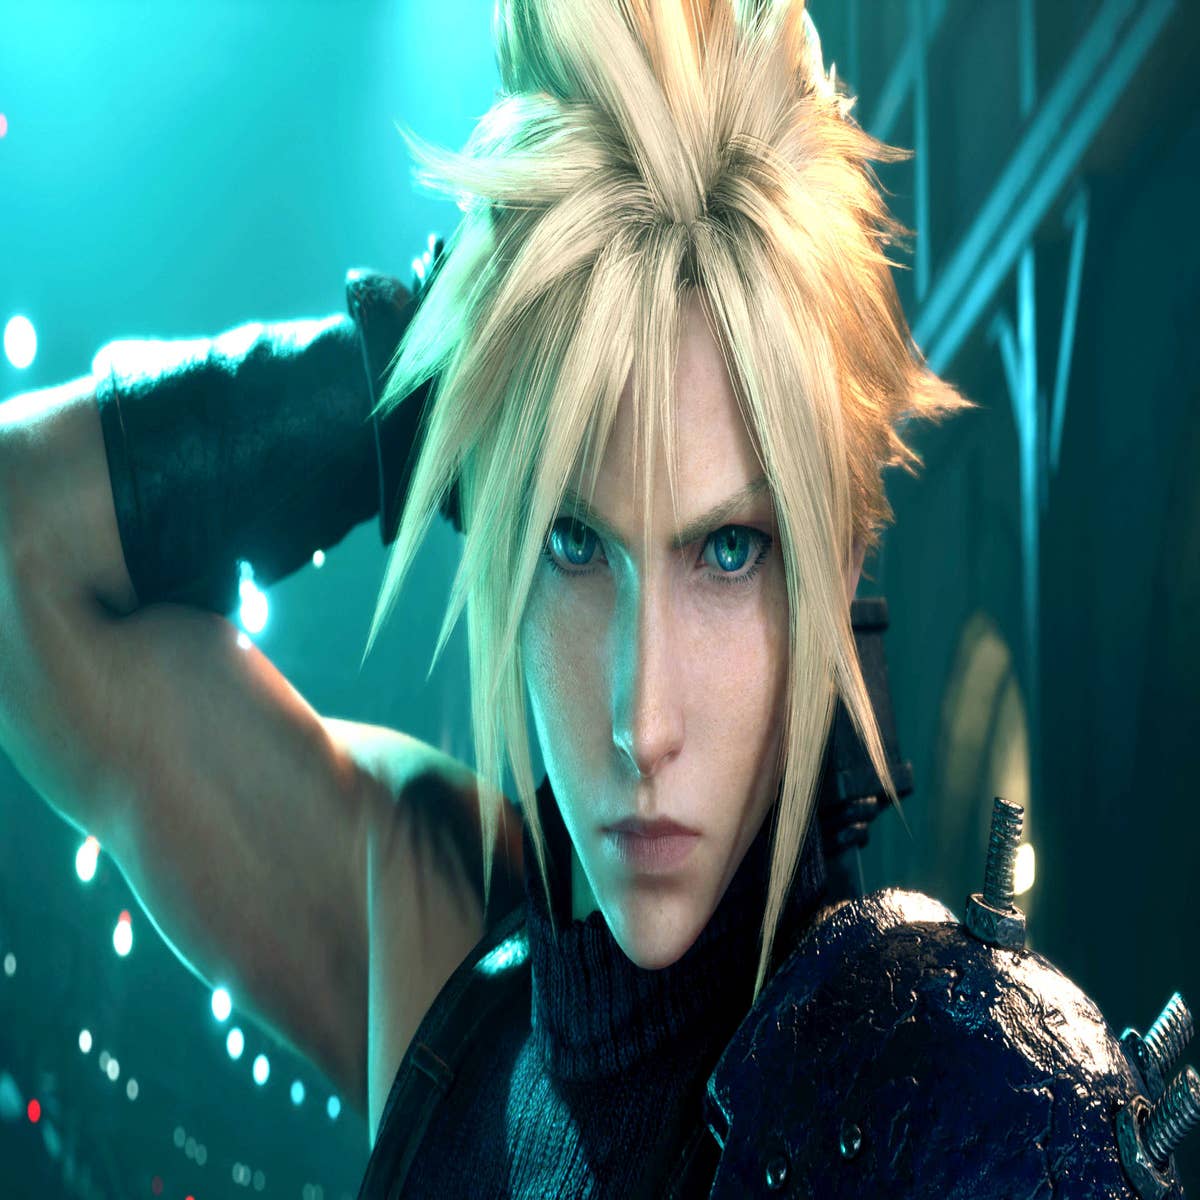 Final Fantasy VII Remake' Steam Release Rumors